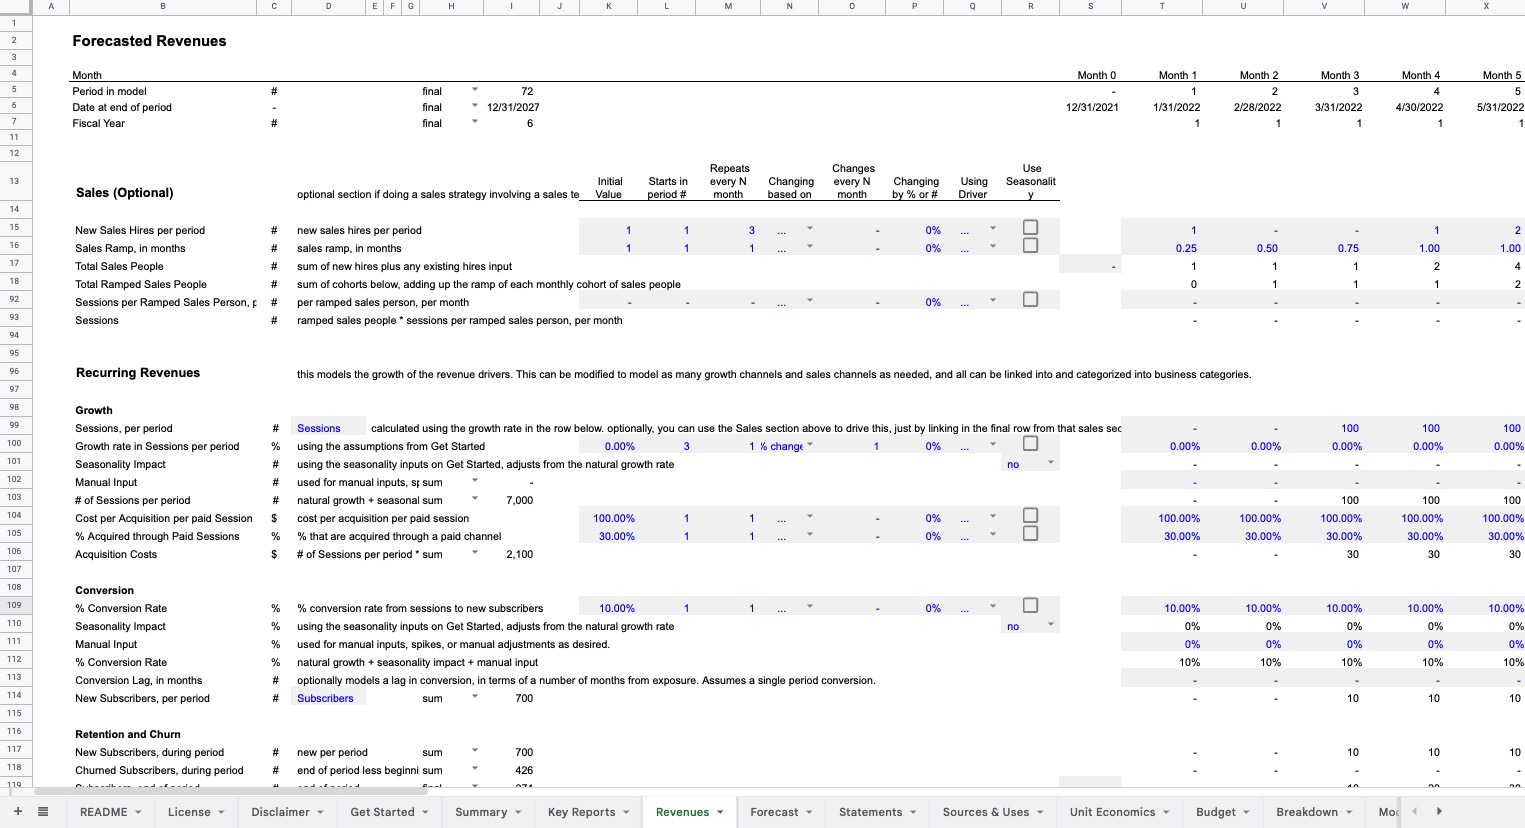 Standard Financial Model Screenshot